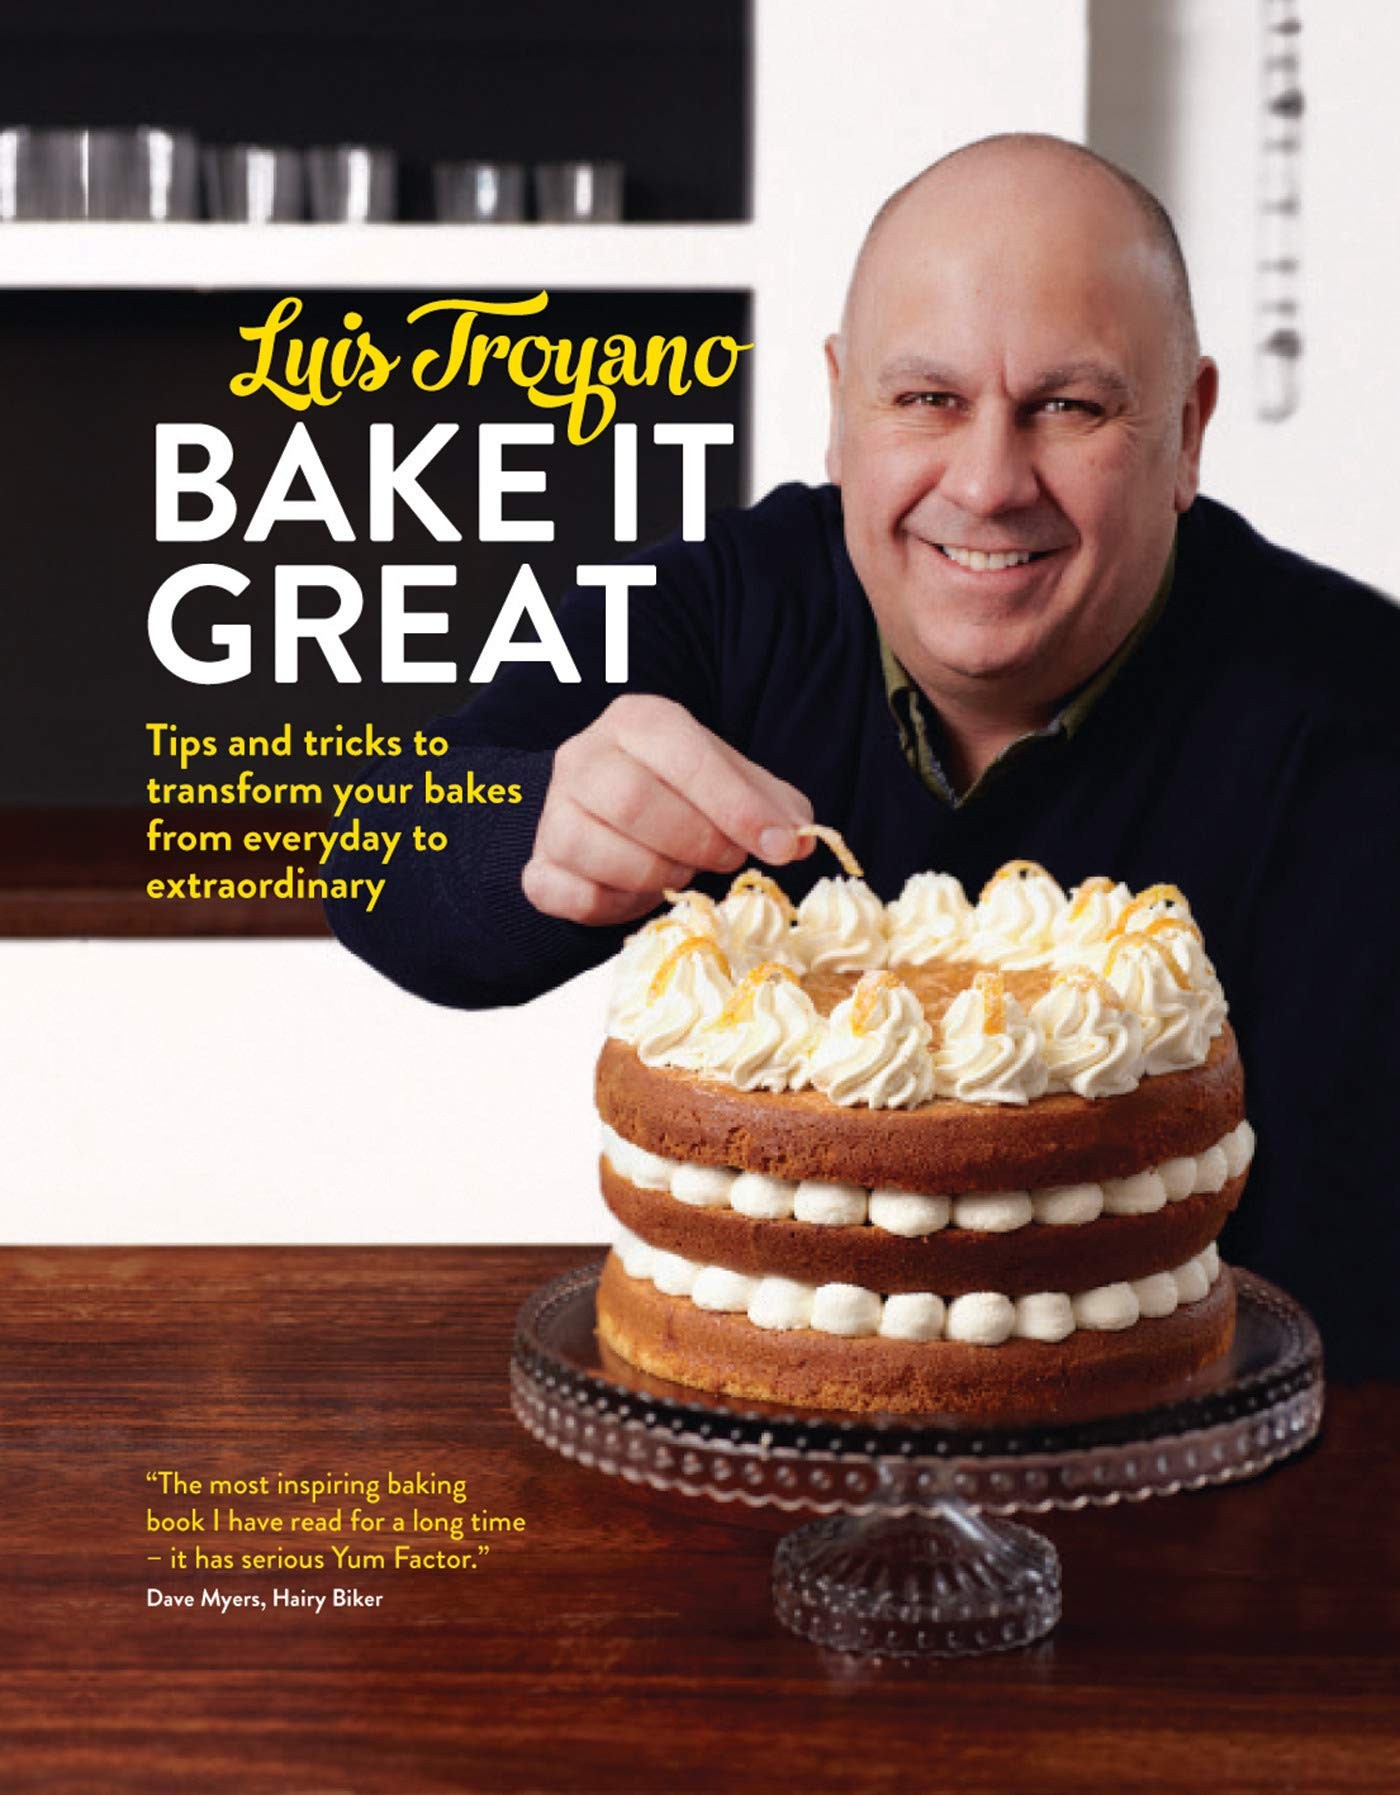 Bake It Great, livro de culinária escrito por Luis Troyano (Foto: Divulgação)